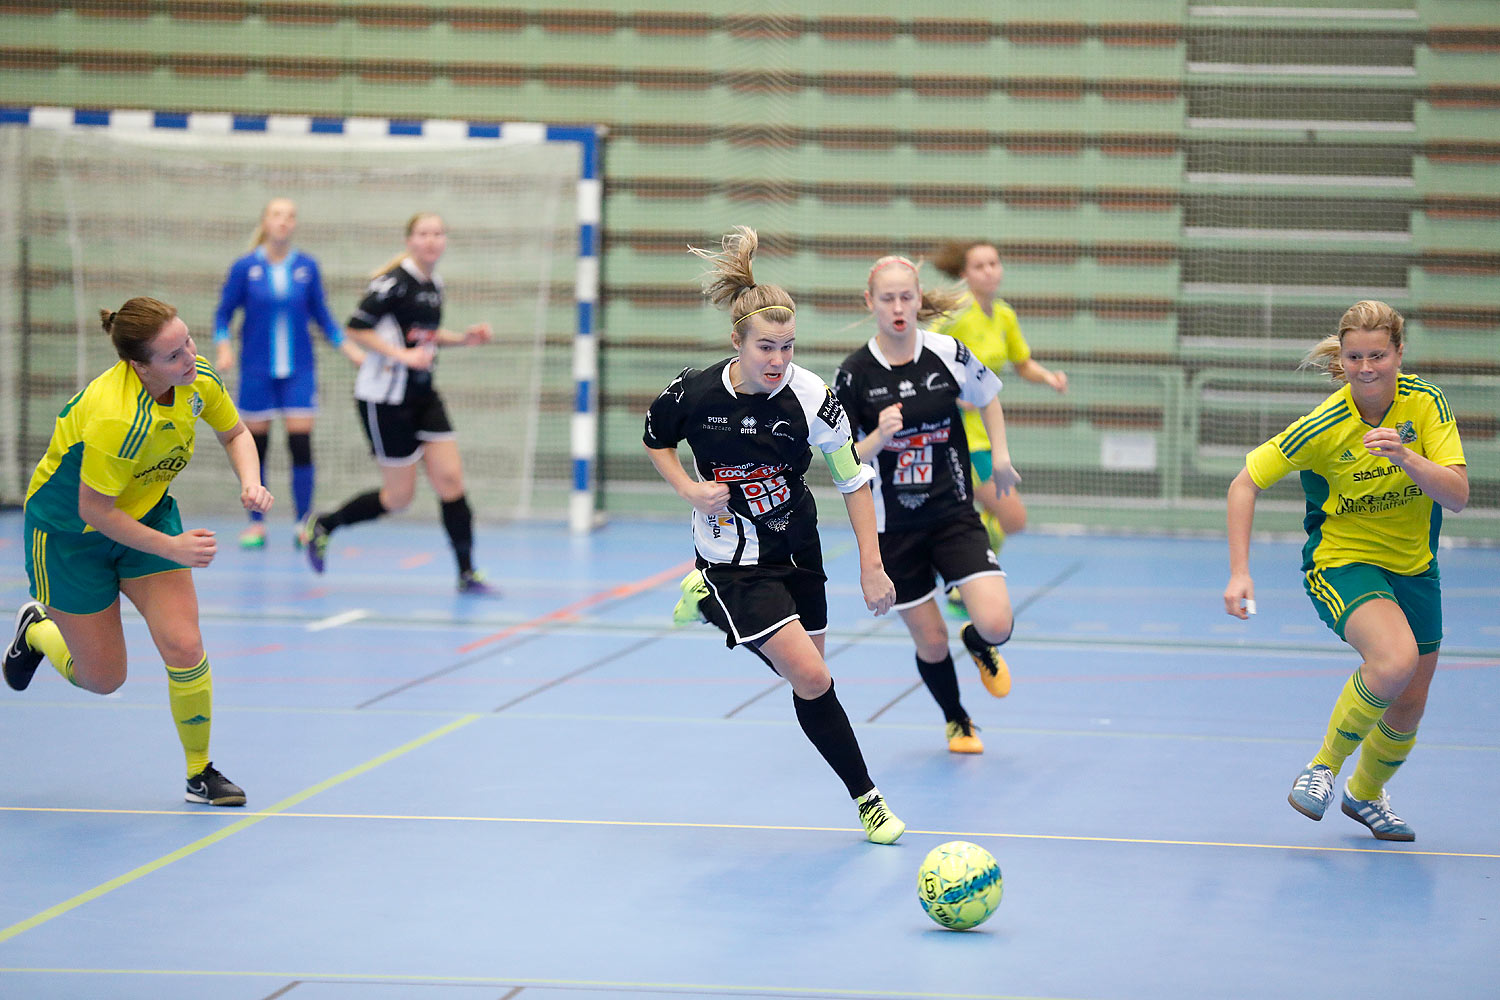 Skövde Futsalcup Damer Hertzöga BK 1-Skövde KIK,dam,Arena Skövde,Skövde,Sverige,Skövde Futsalcup 2016,Futsal,2016,141717